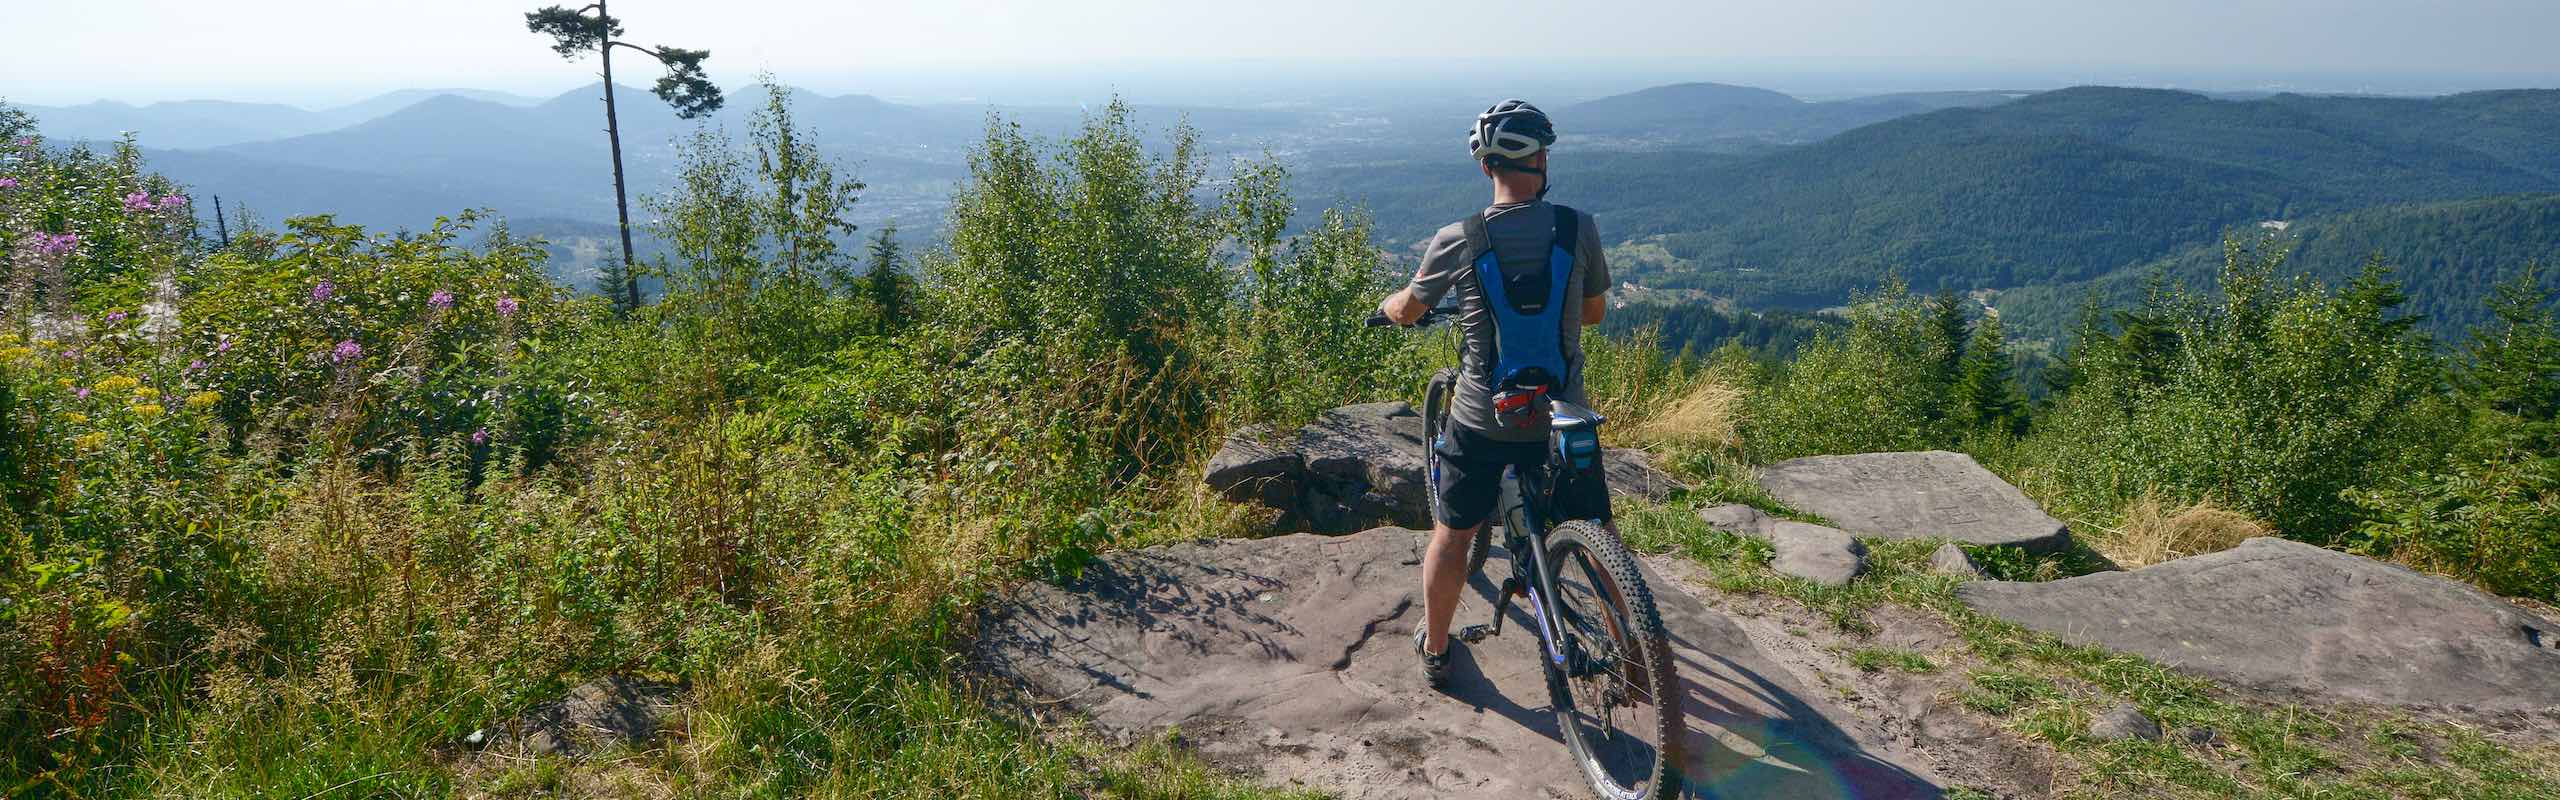 Mountainbiker betrachtet von einer Anhöhe die Landschaft des Schwarzwaldes mit seinen zahlreichen Schwarzwaldbergen